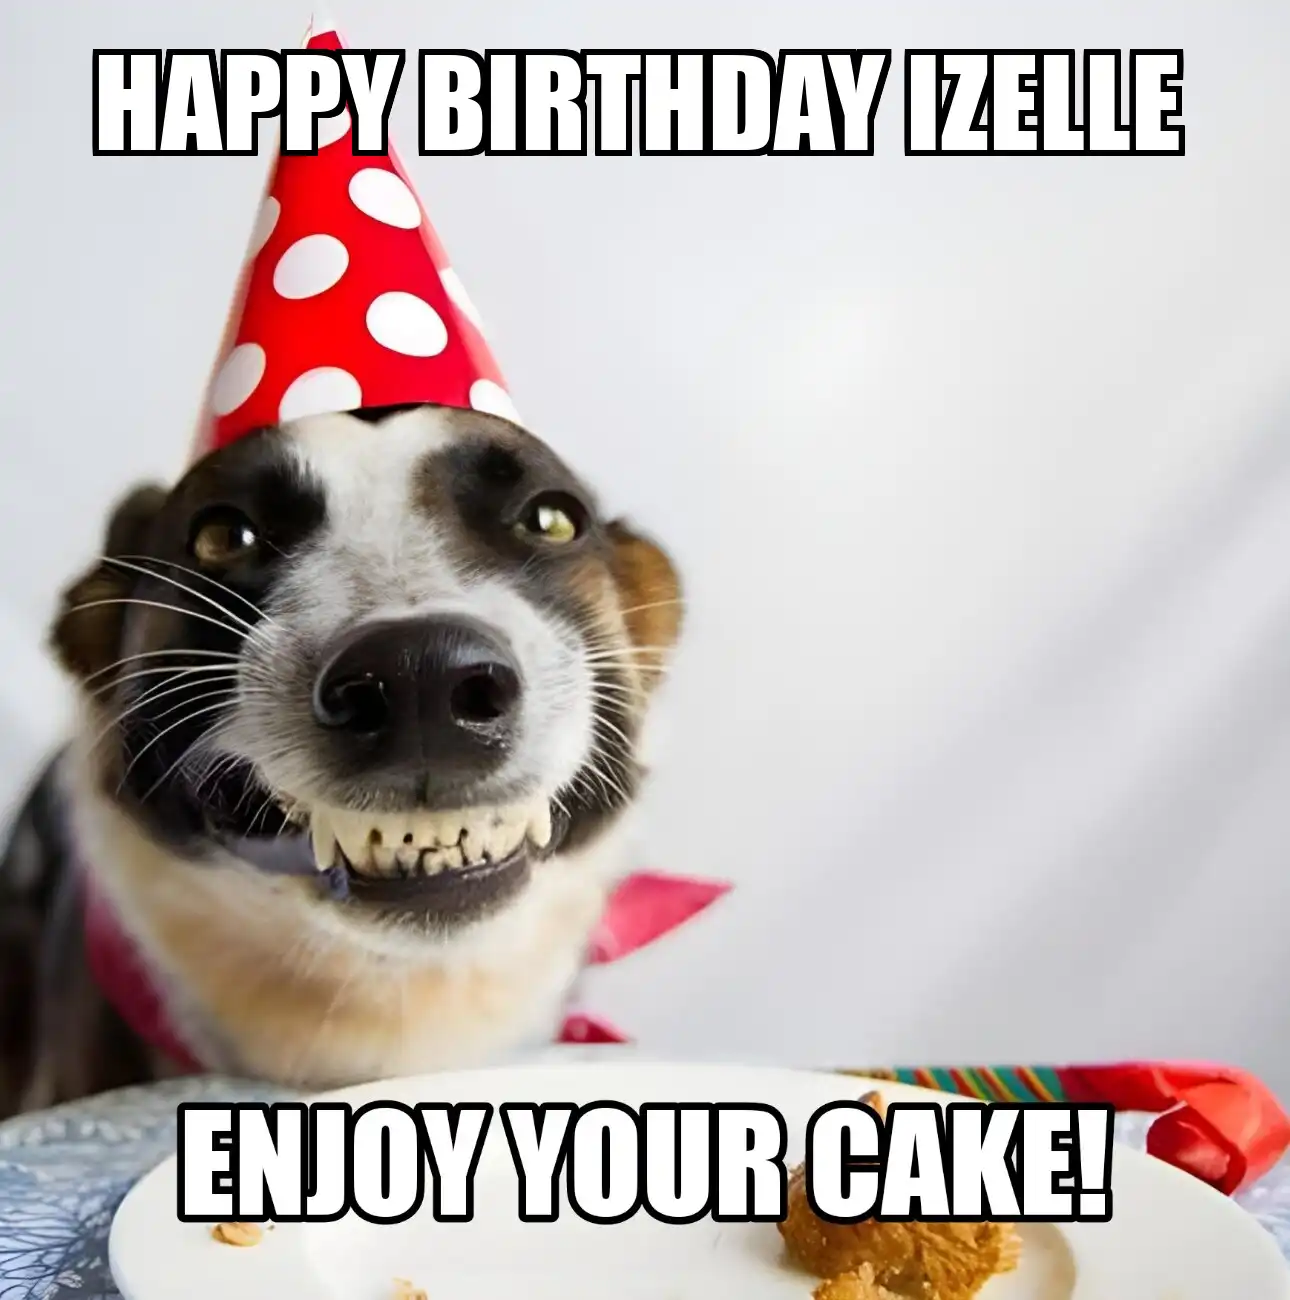 Happy Birthday Izelle Enjoy Your Cake Dog Meme